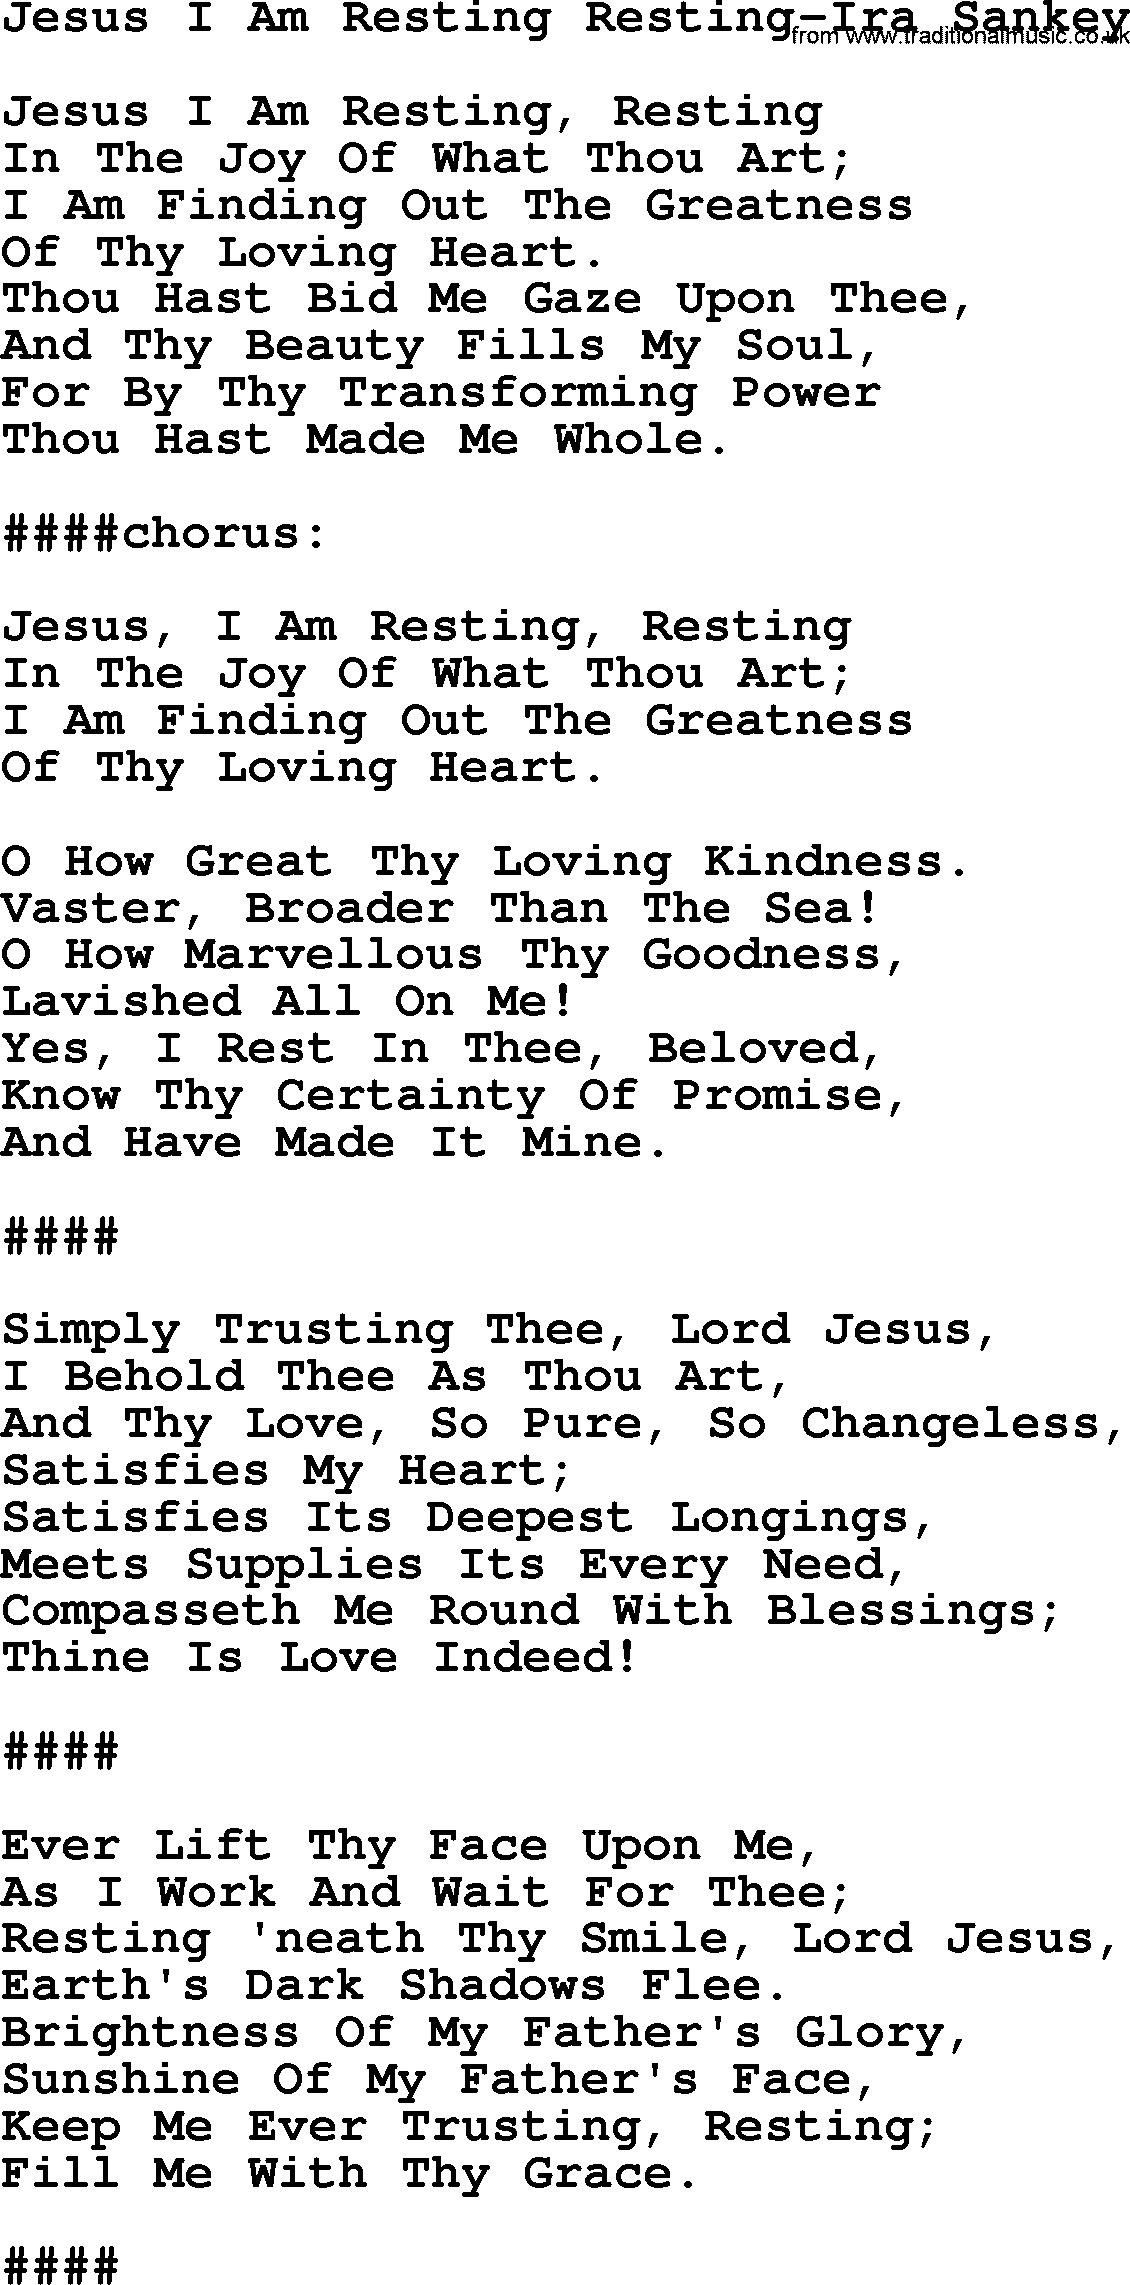 Ira Sankey hymn: Jesus I Am Resting Resting-Ira Sankey, lyrics